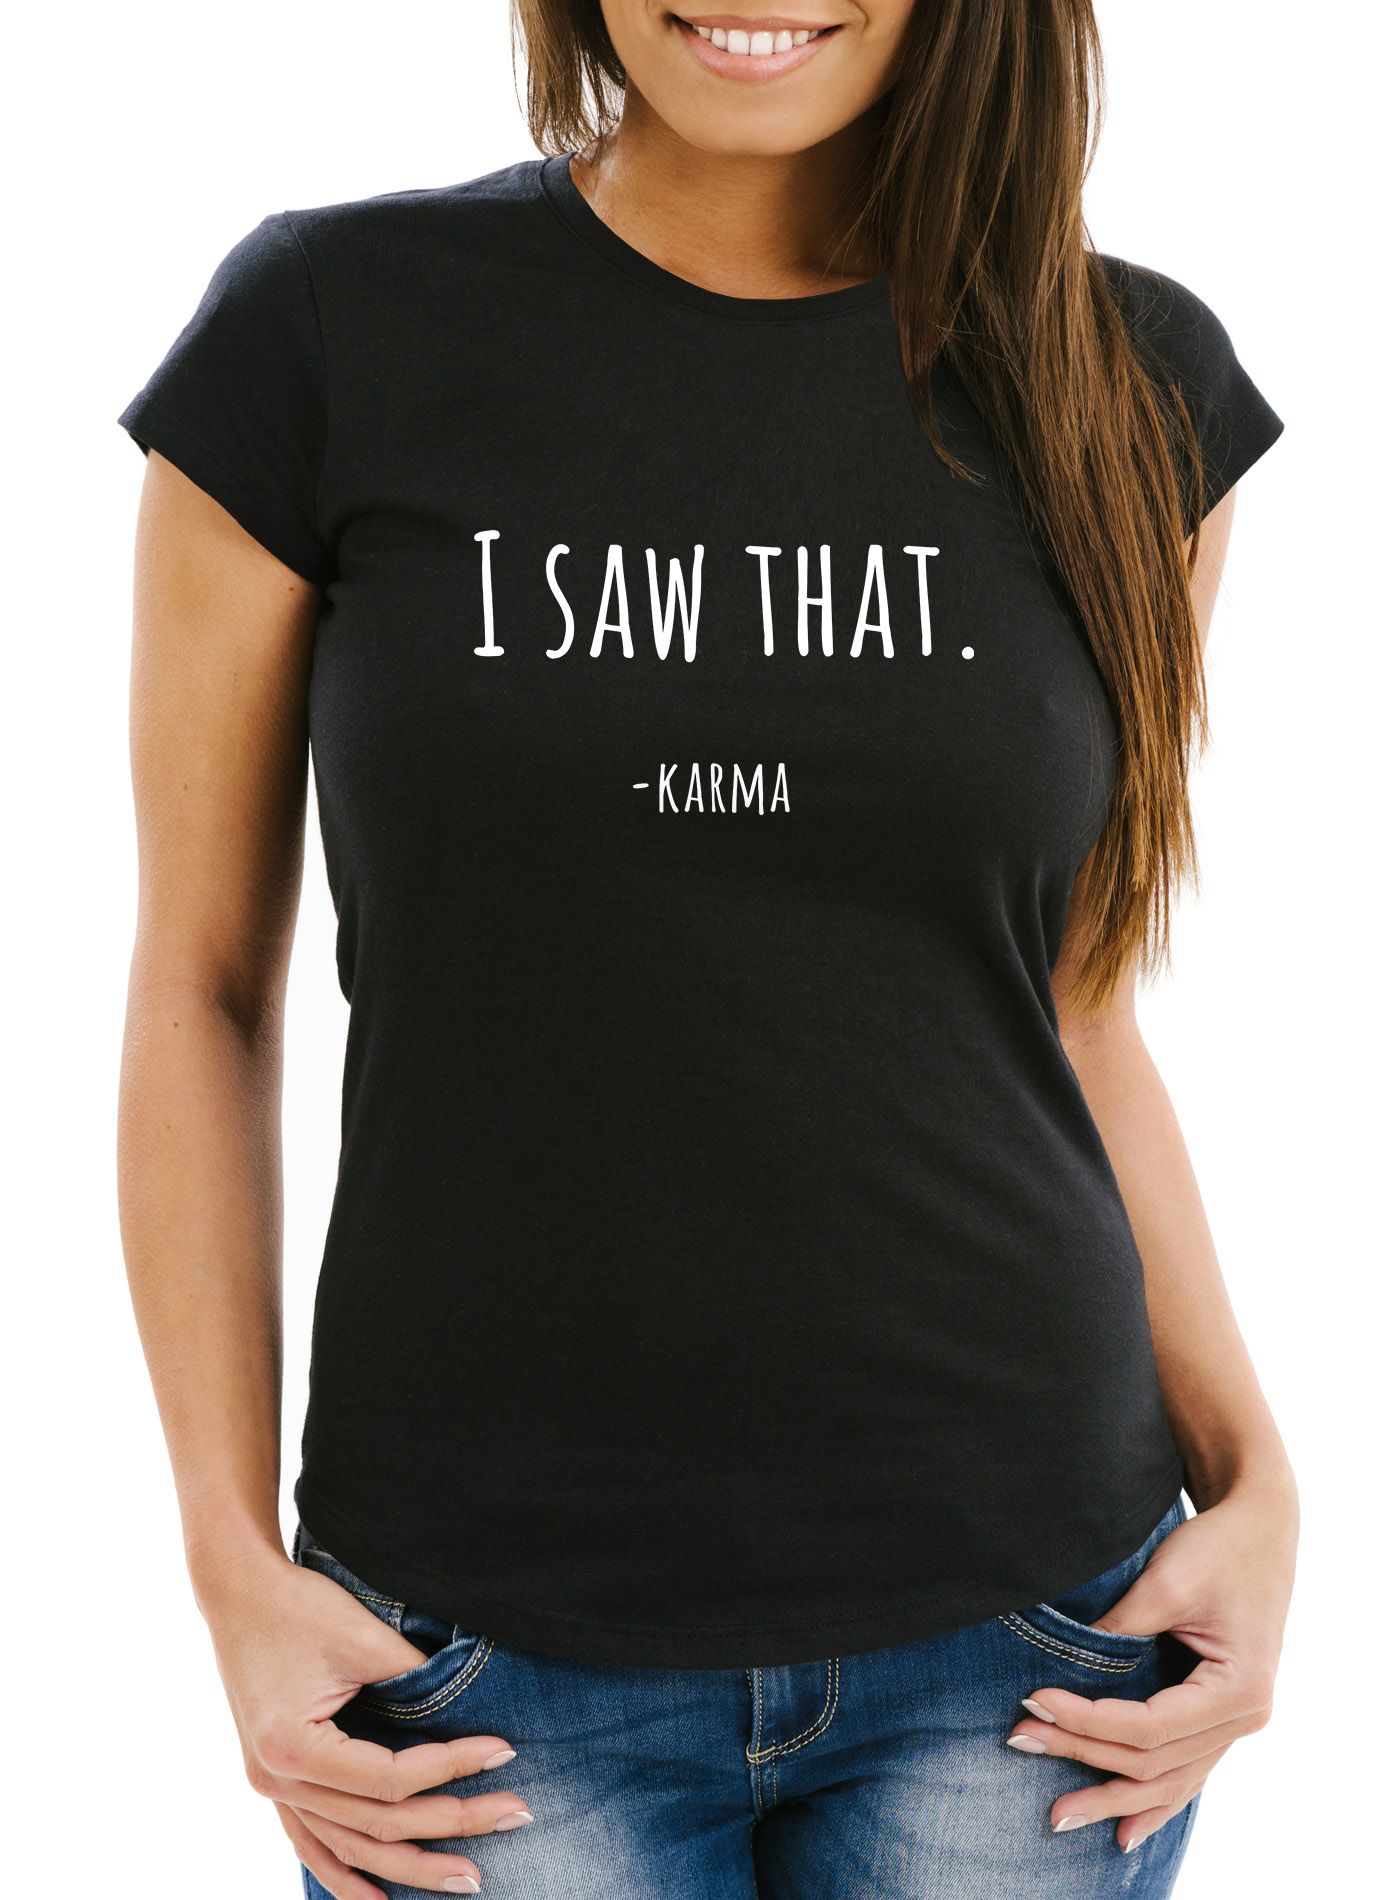 Damen T-Shirt I saw that- Karma lustiges Spruch Fun-Shirt Moonworks® | Akowi